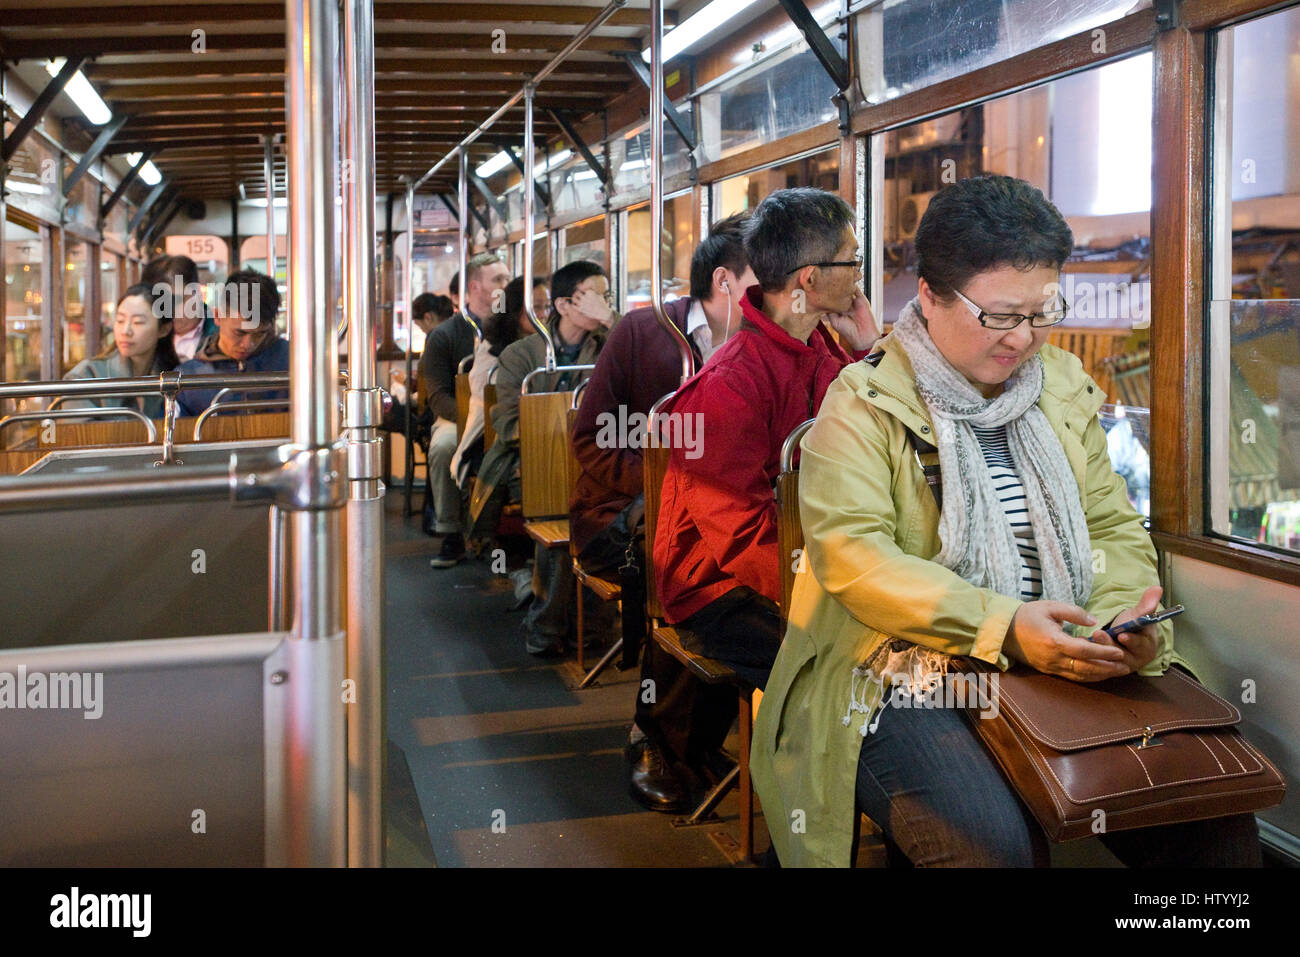 Les passagers assis à l'intérieur d'un tram voyageant le long d'une rue à Causeway Bay avec une femme contrôle de son téléphone mobile. Banque D'Images